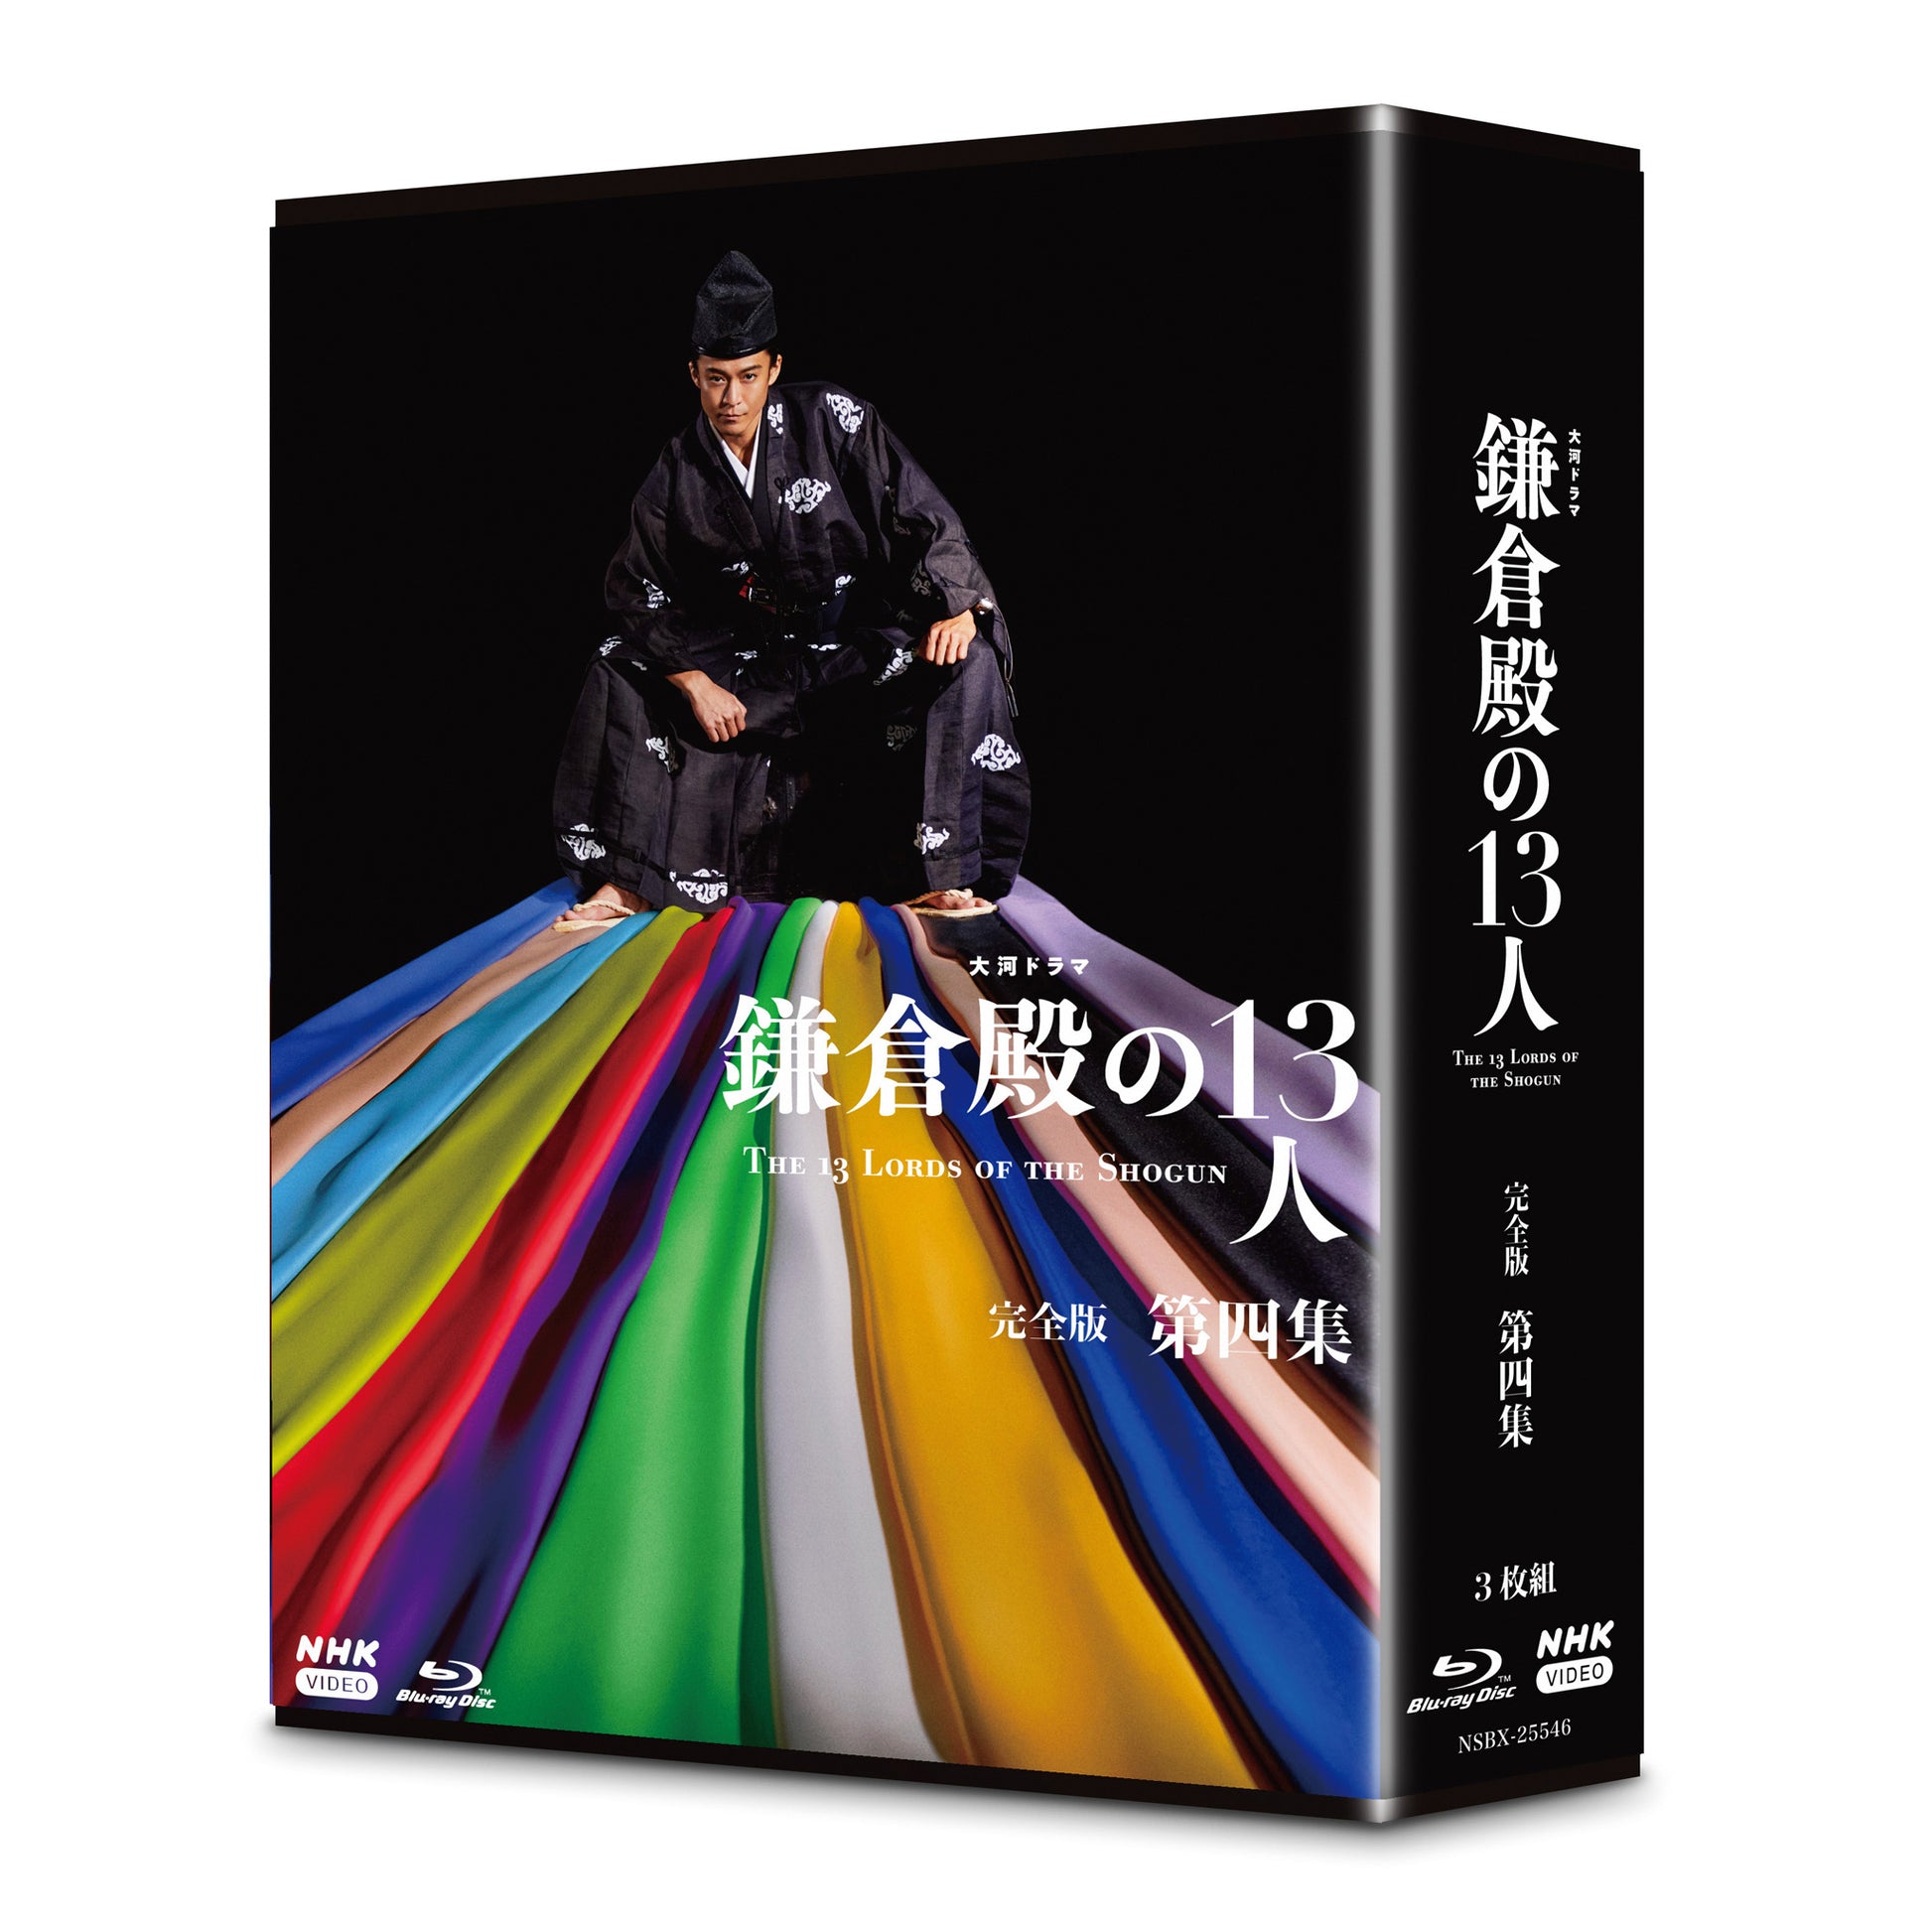 大河ドラマ 鎌倉殿の13人 完全版 第四集 ブルーレイBOX 全4枚